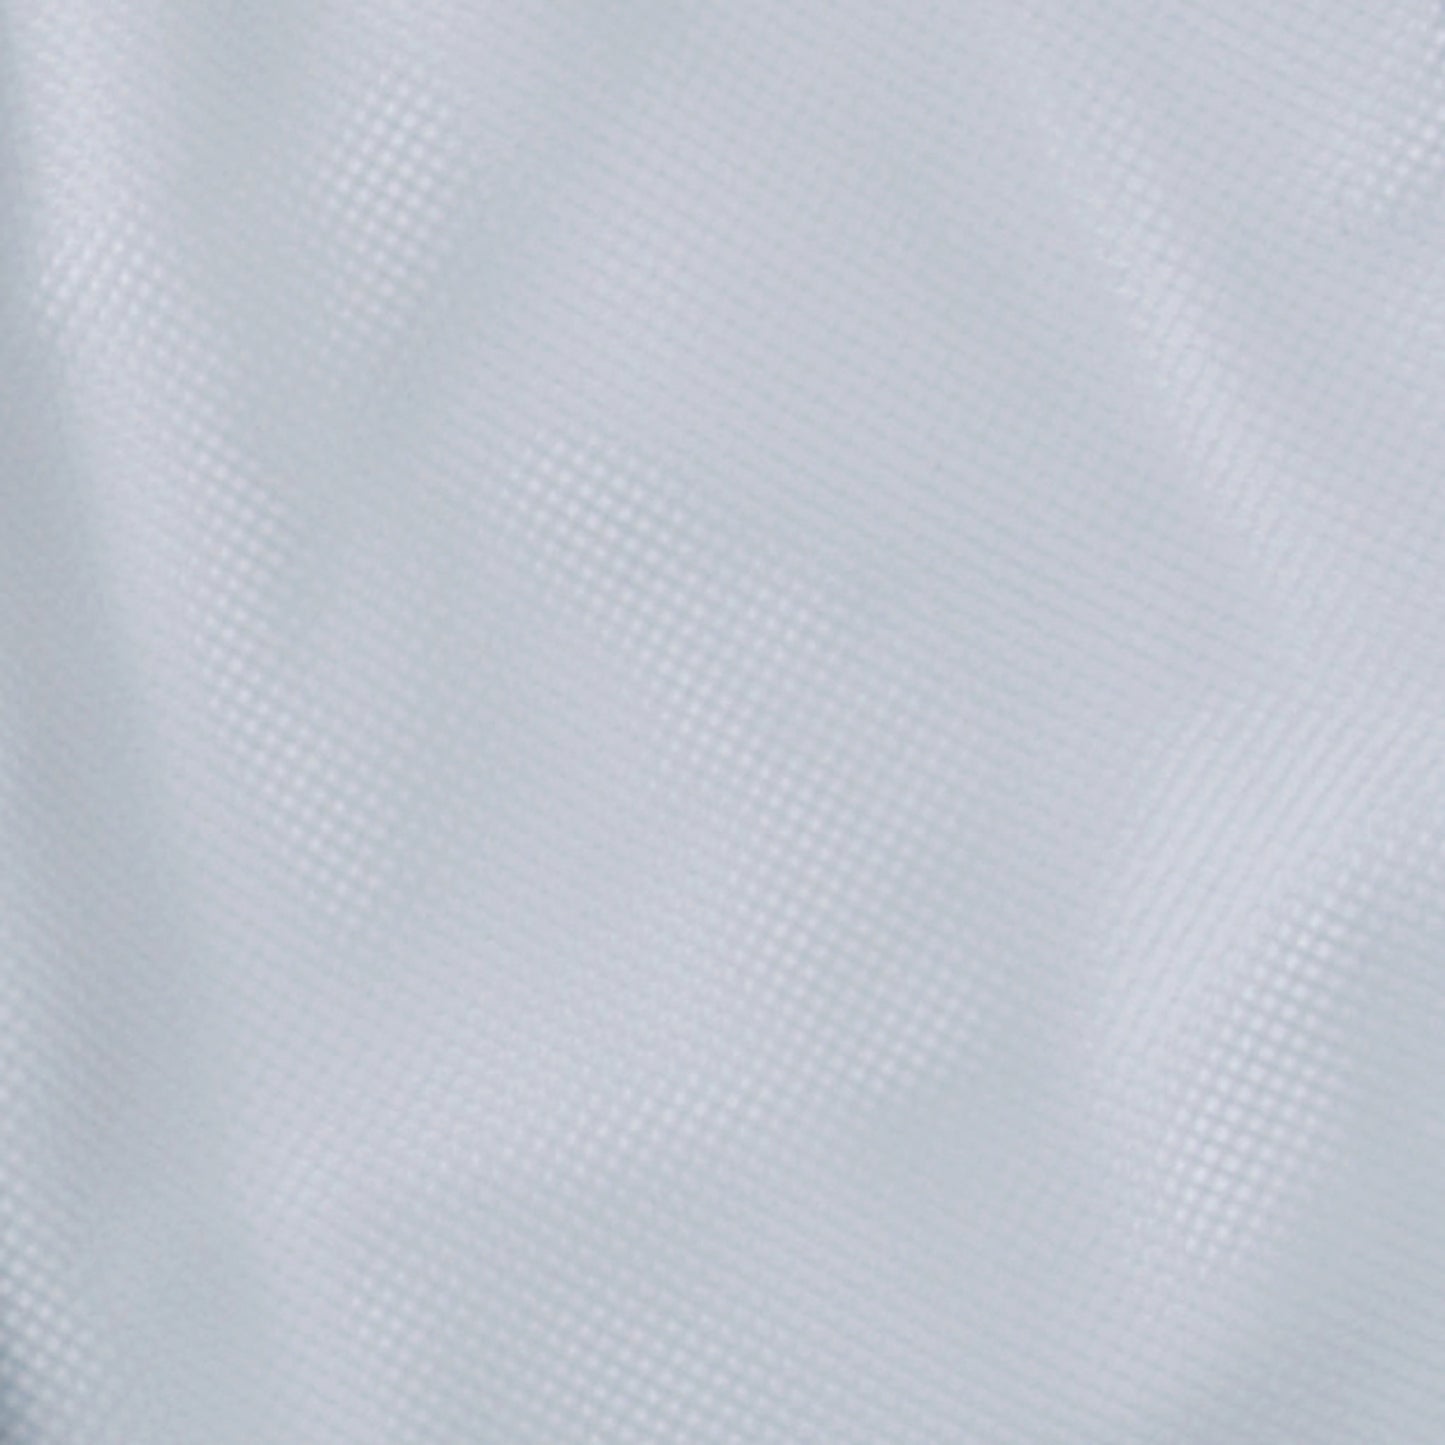 サンエス 食品工場用白衣 フードマイスター 制菌・制電繊維の常温ユニフォーム 【女性用パンツ】 FX70338